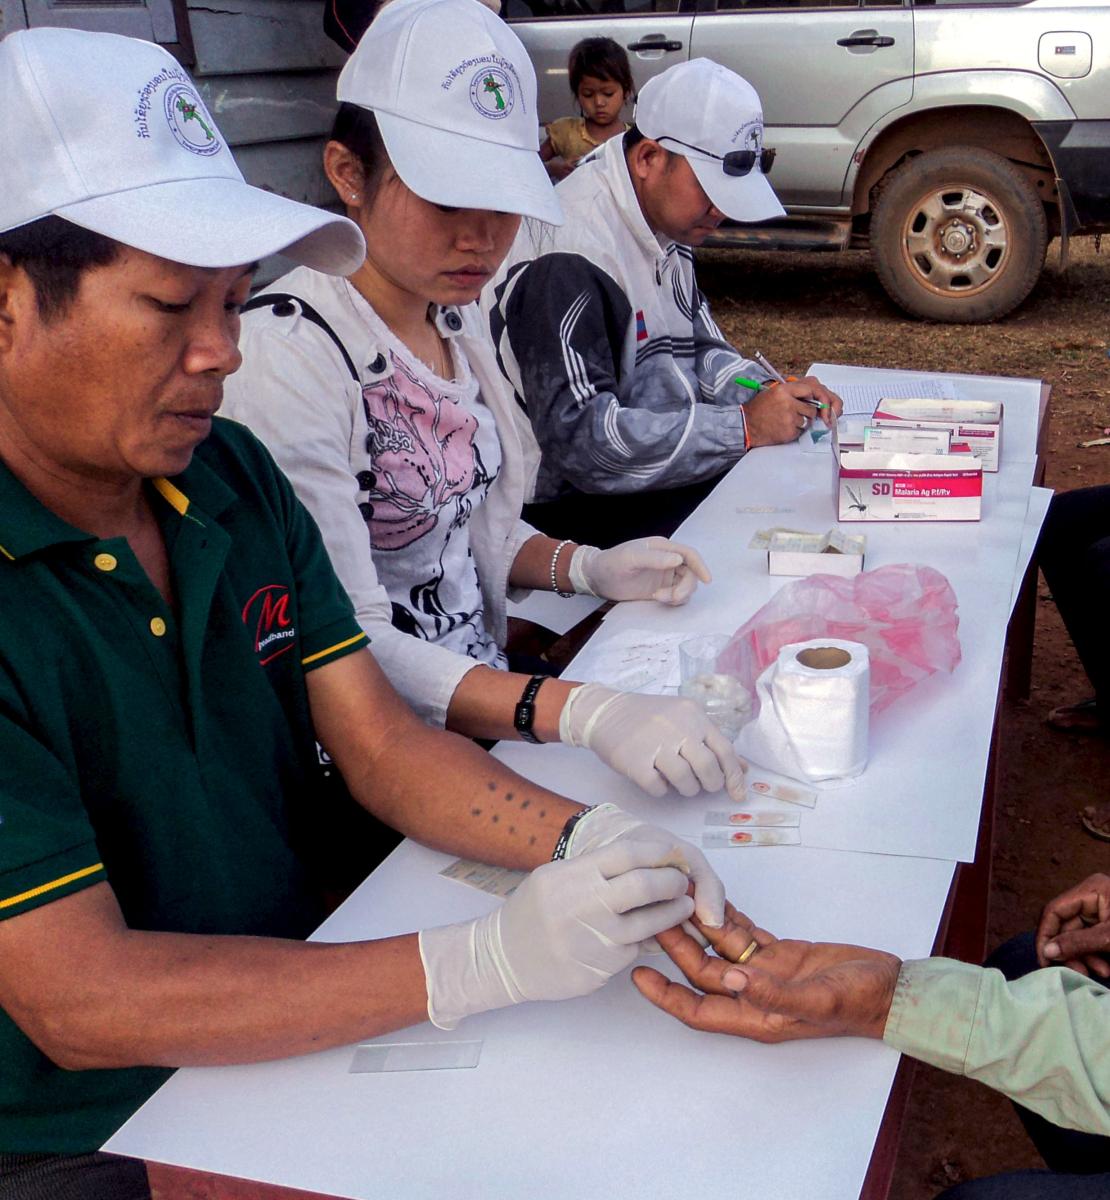 Personal del Centro de Prevención y Erradicación de la Malaria realiza pruebas de diagnóstico rápido de la malaria.